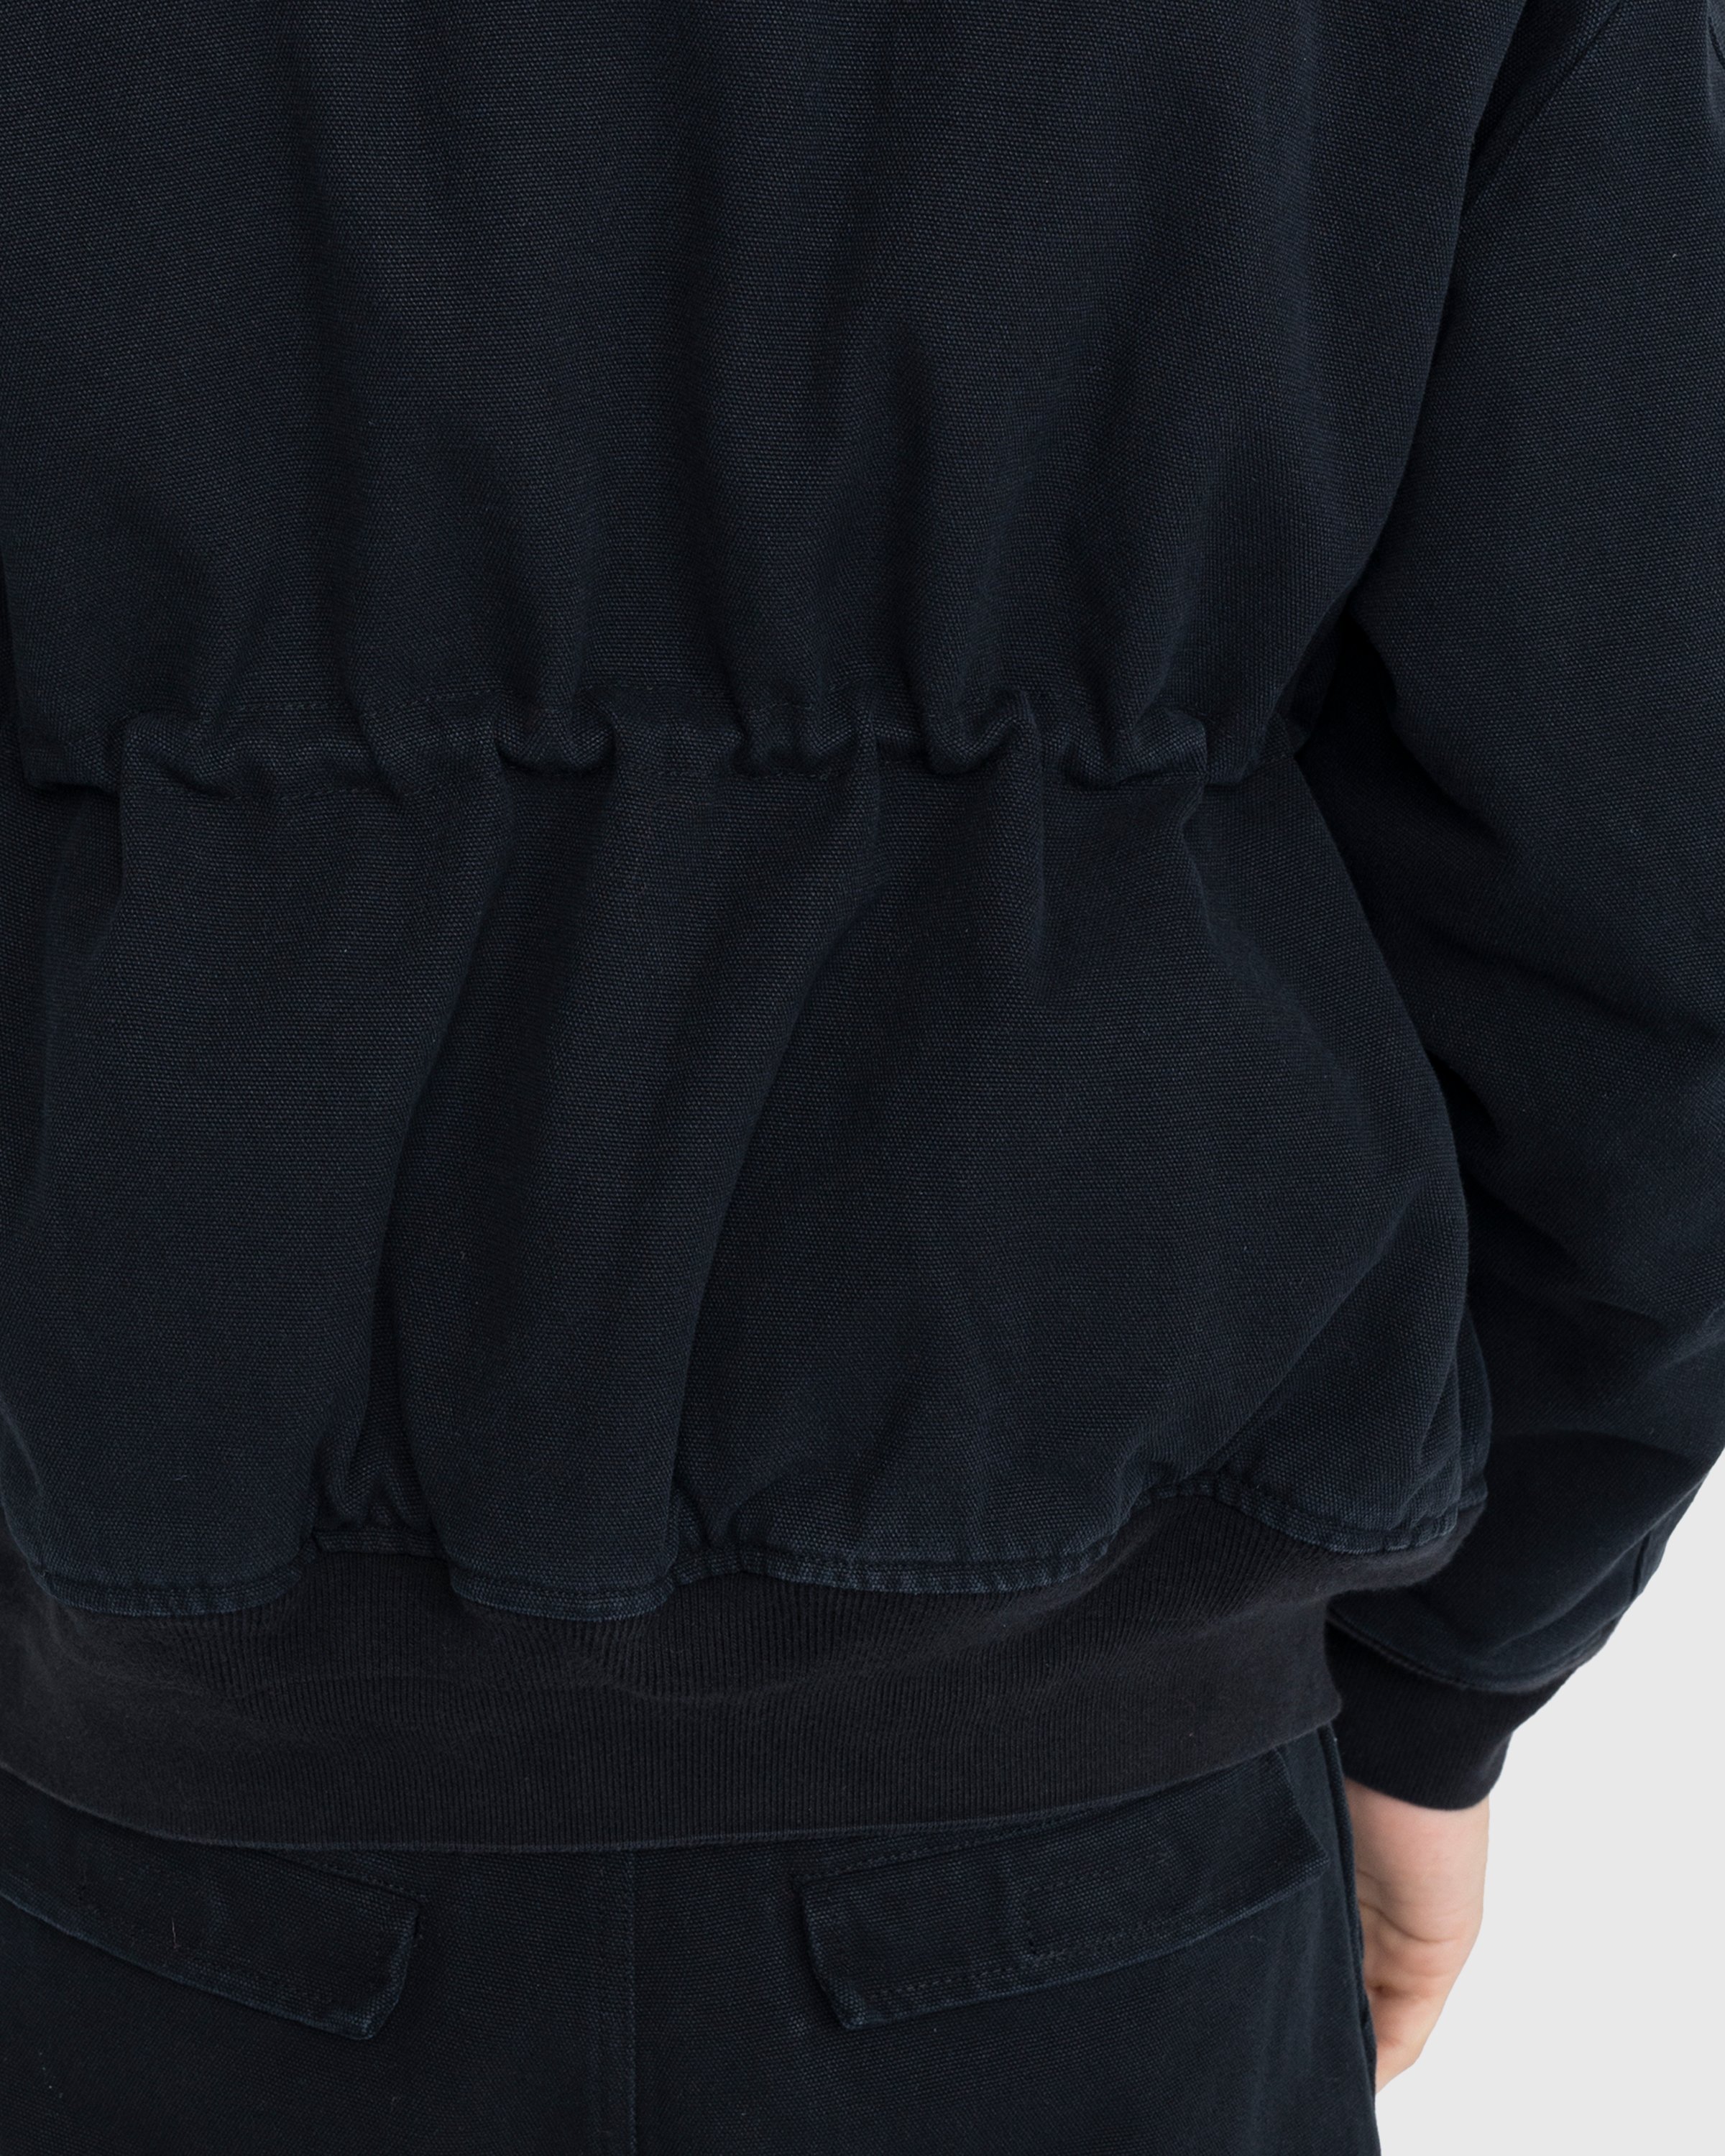 Acne Studios - Organic Cotton Bomber Jacket Black - Clothing - Black - Image 6